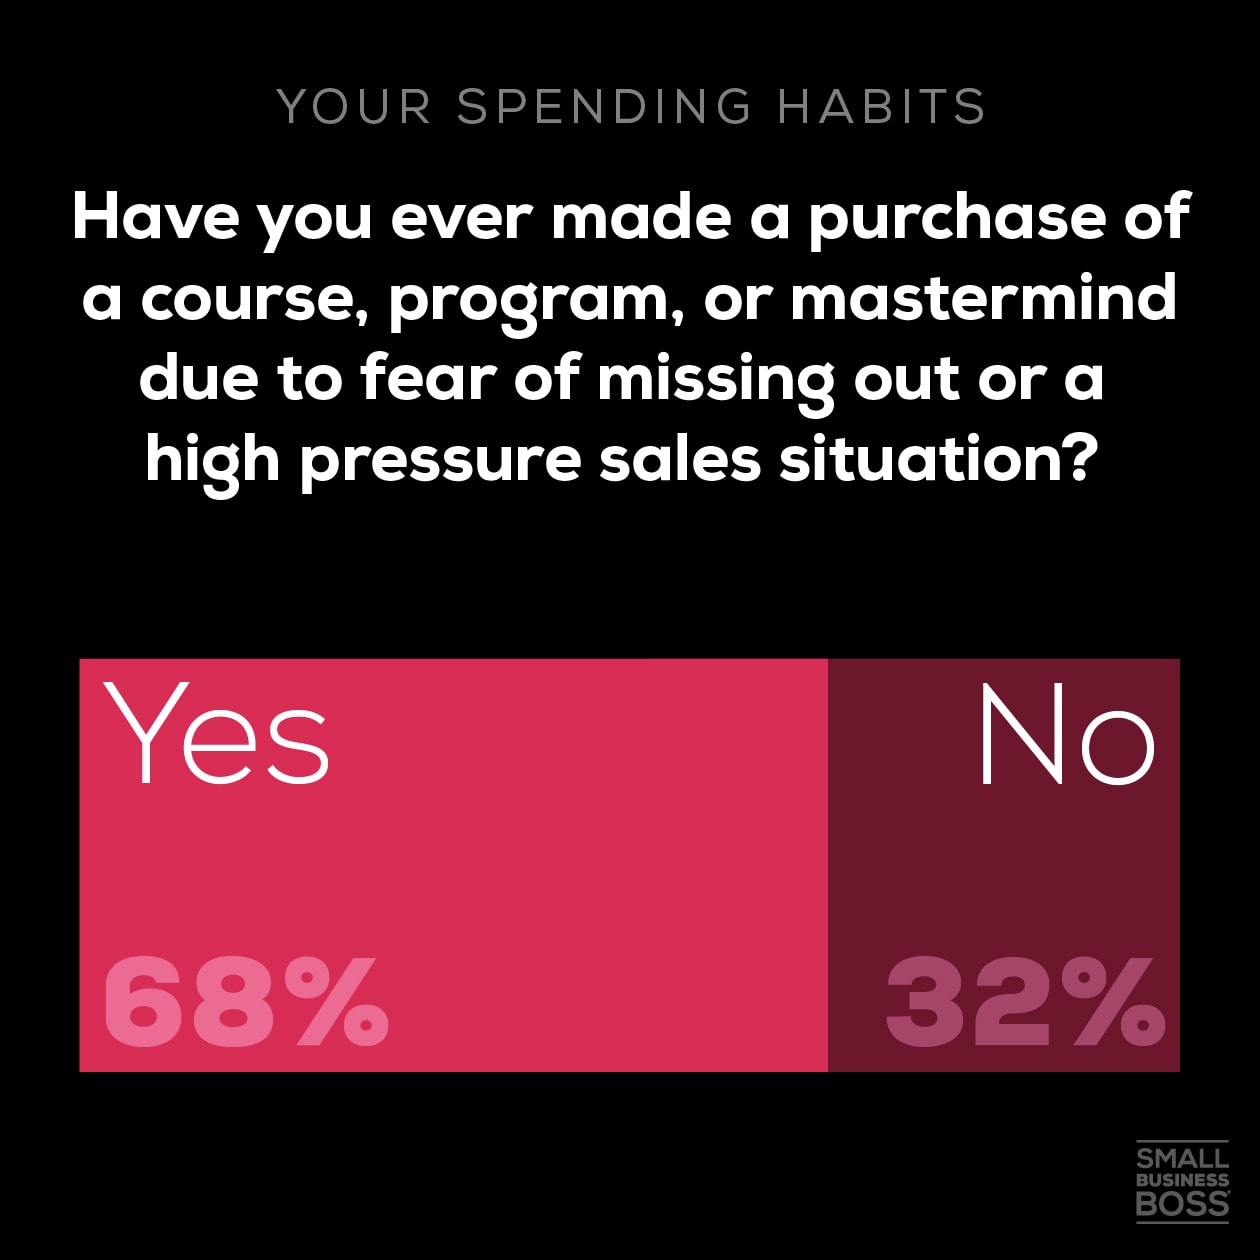 Spending habits-fomo